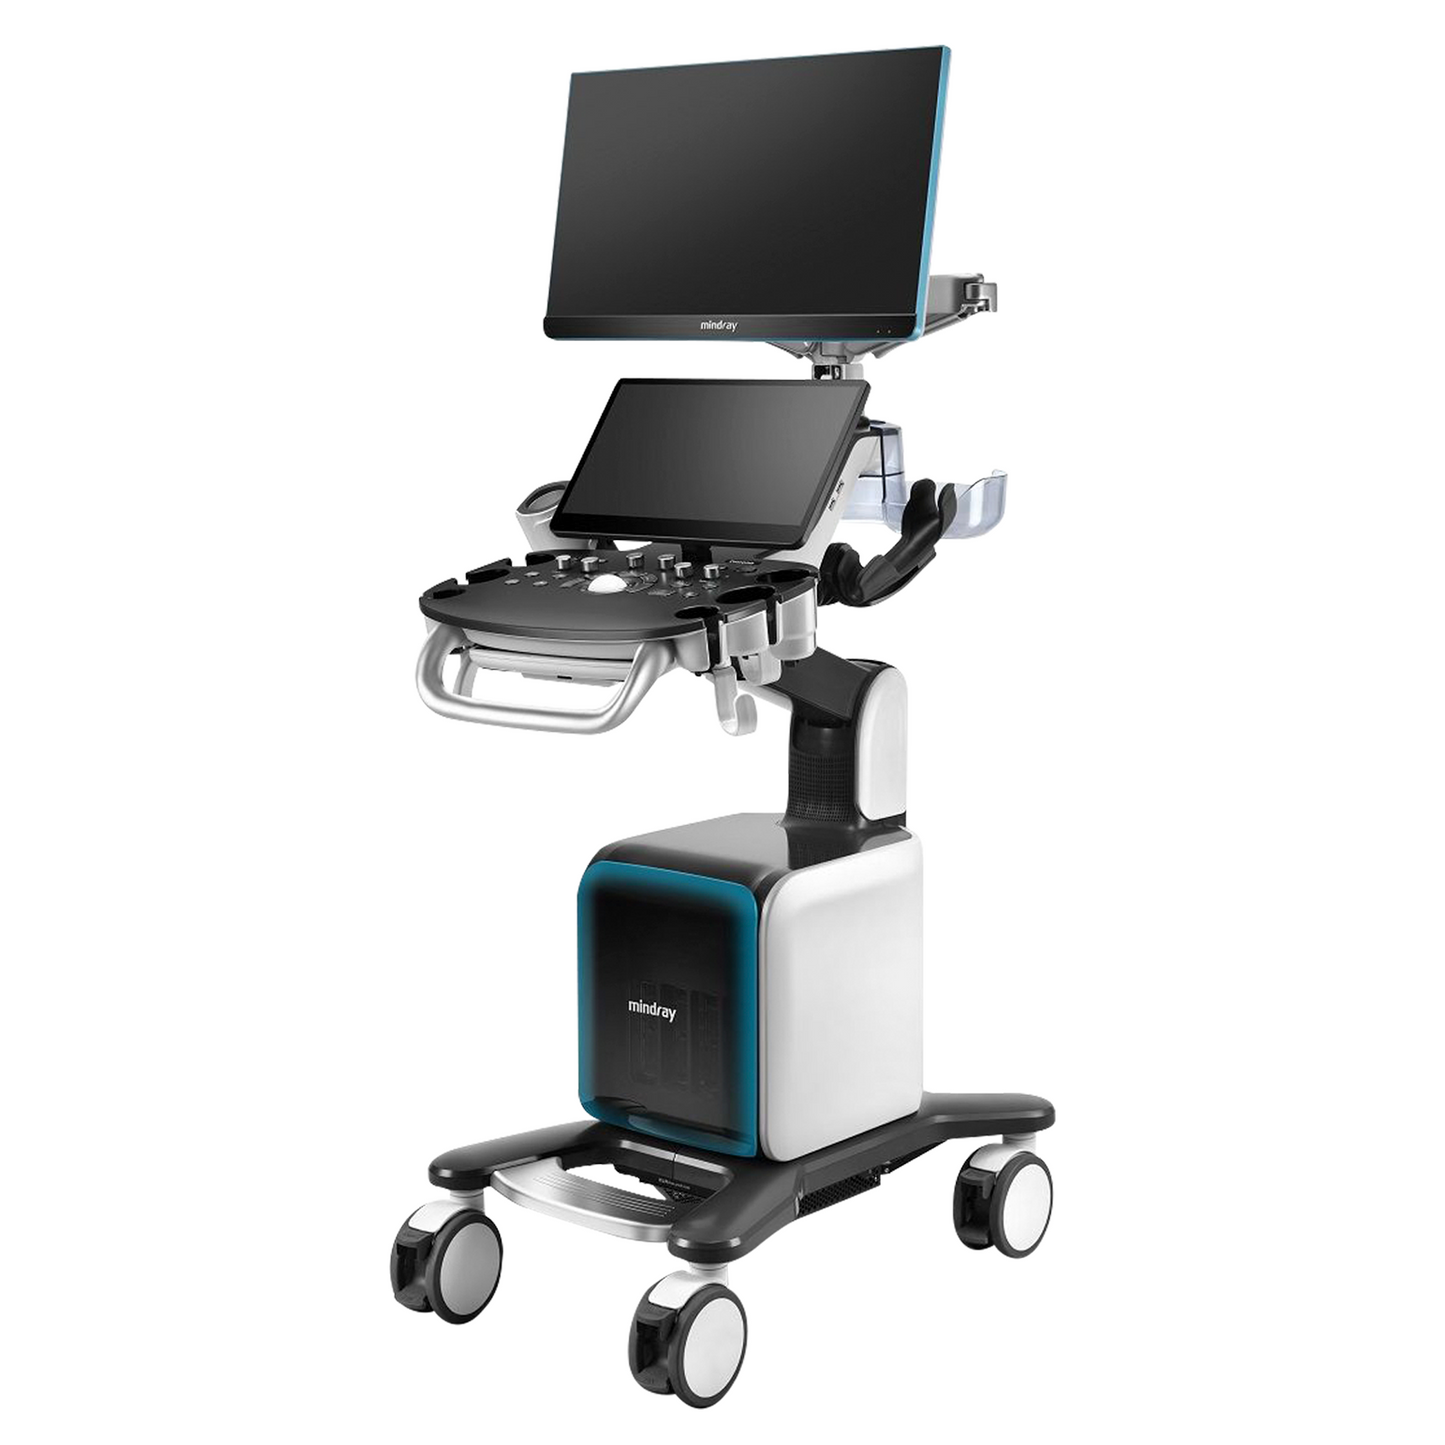 dispositivo médico de ultrasonido para realizar imágenes en tiempo real del cuerpo humano, se caracteriza por  realizar diagnósticos eficientes